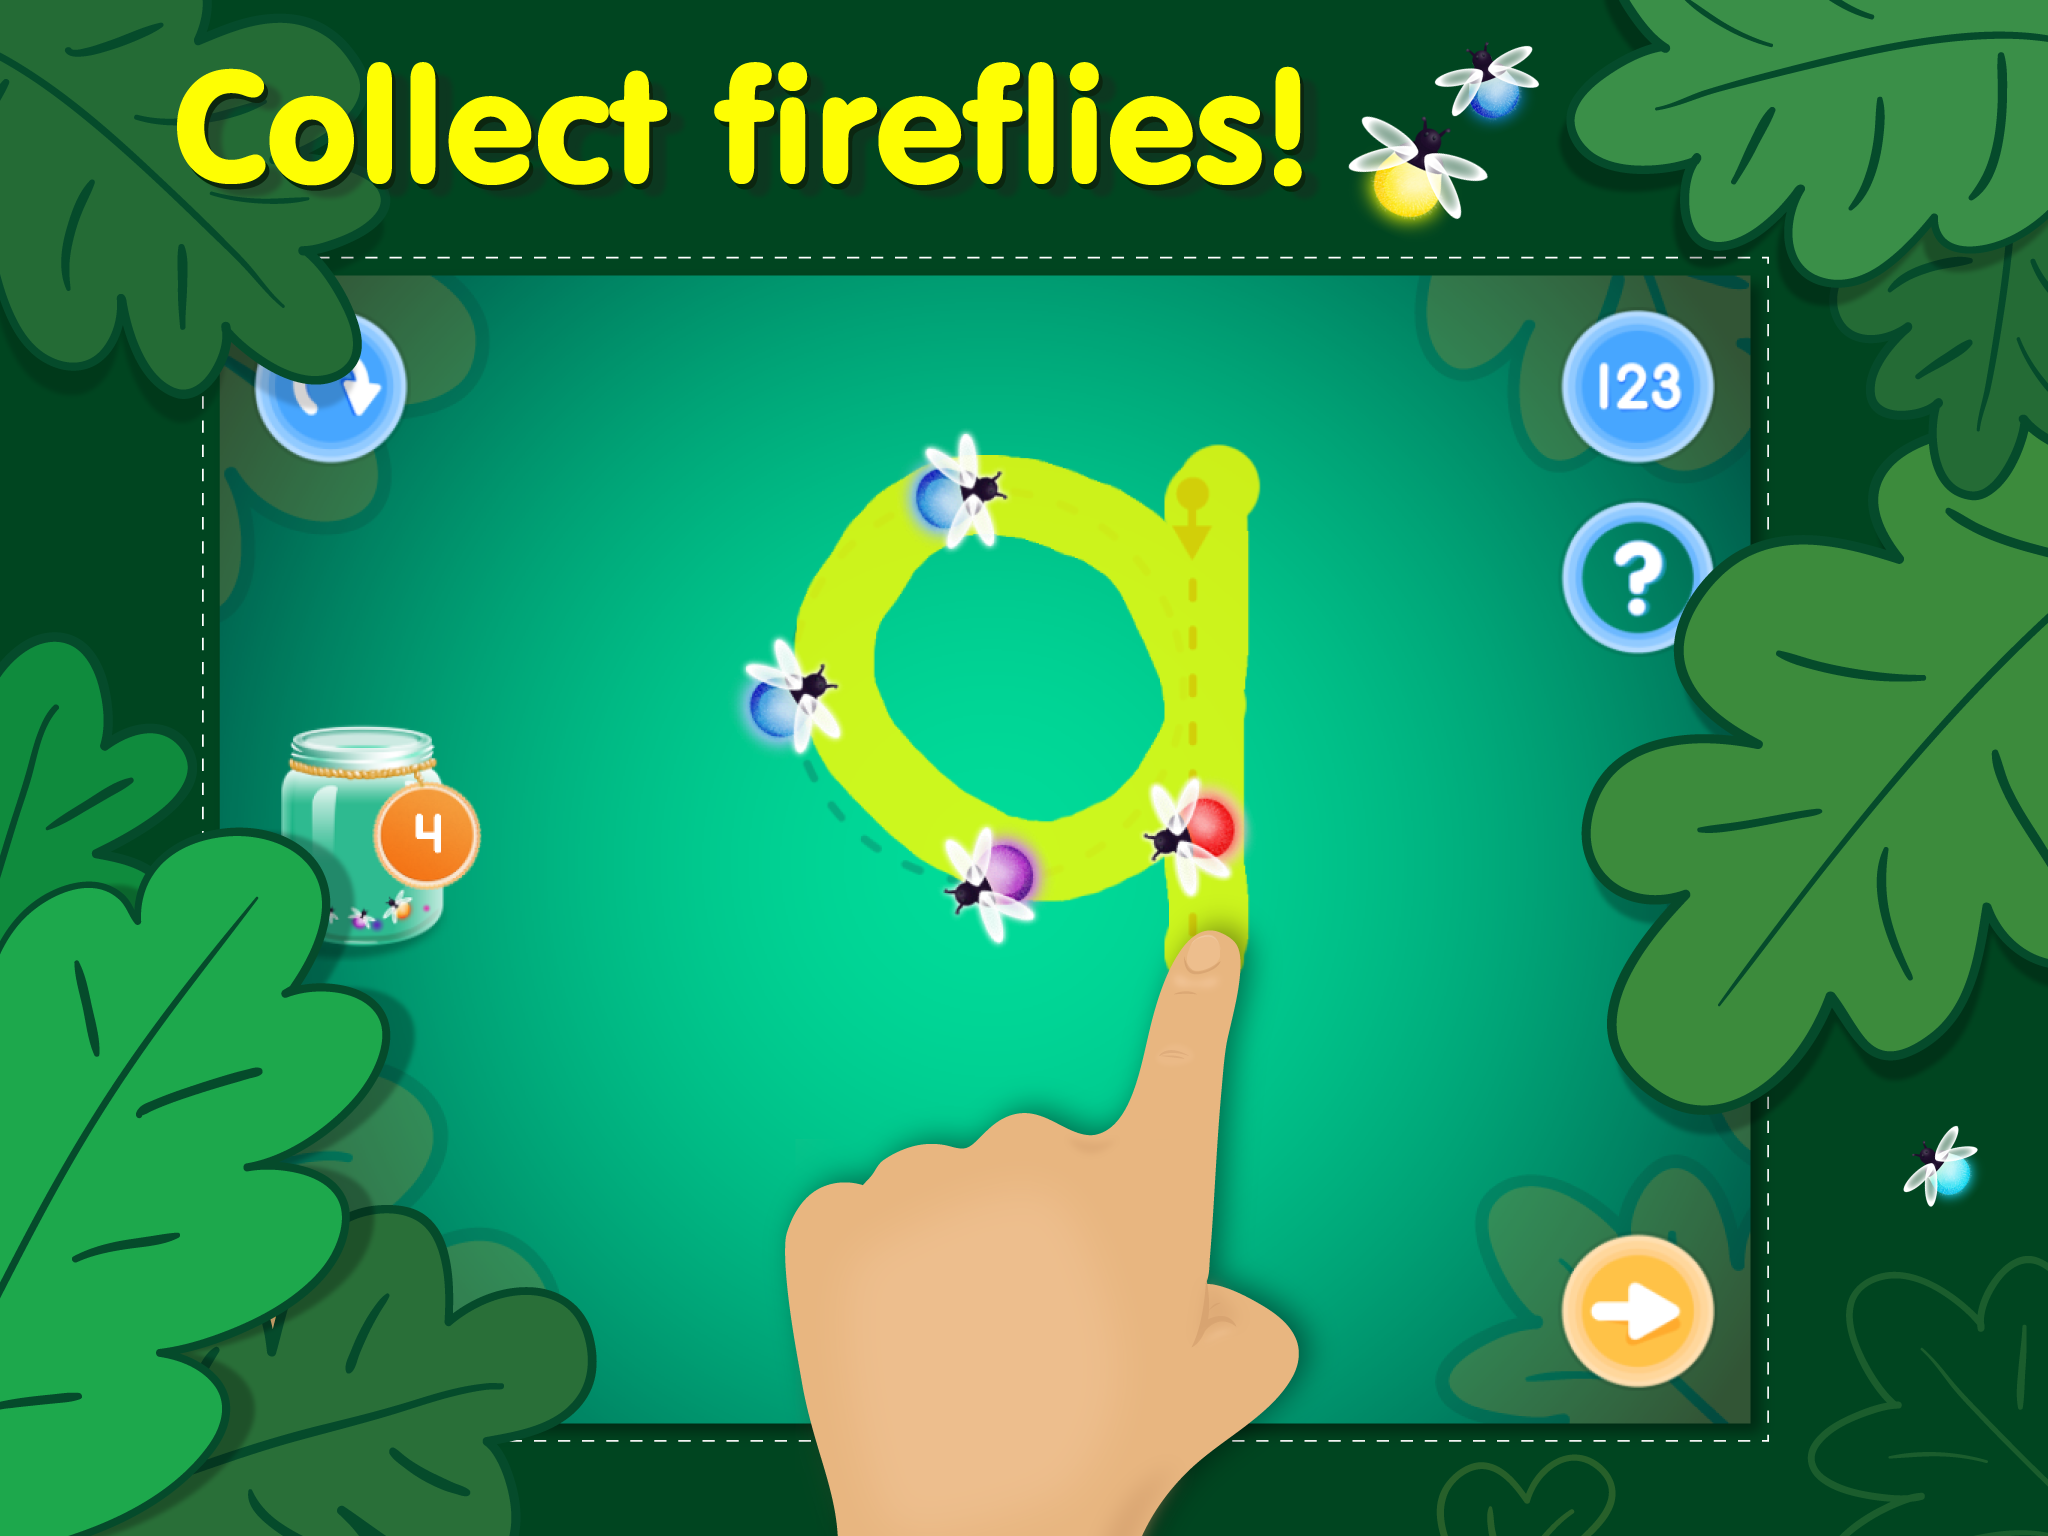 Collect fireflies